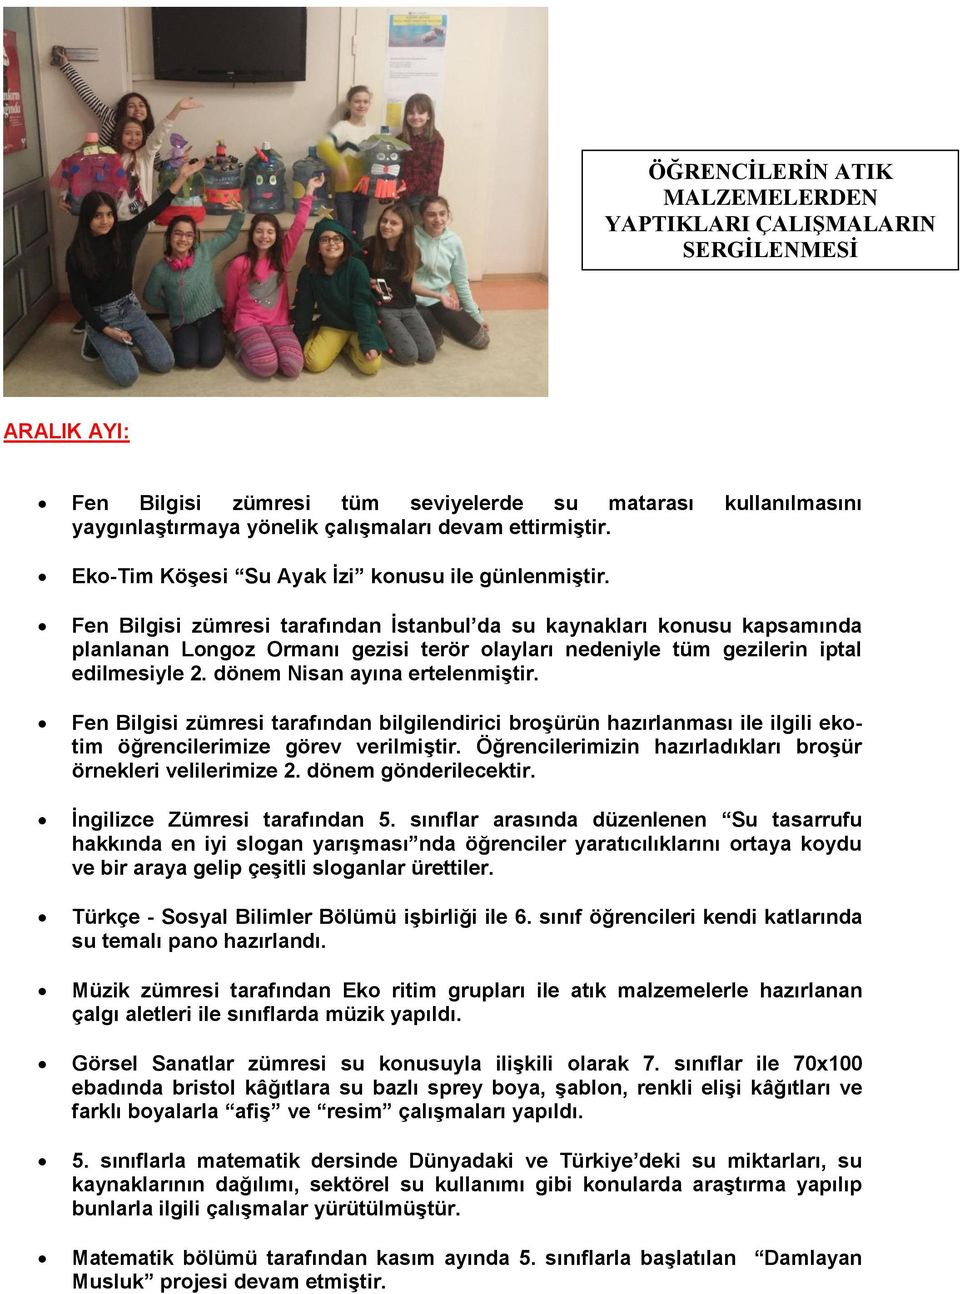 Fen Bilgisi zümresi tarafından İstanbul da su kaynakları konusu kapsamında planlanan Longoz Ormanı gezisi terör olayları nedeniyle tüm gezilerin iptal edilmesiyle 2. dönem Nisan ayına ertelenmiştir.